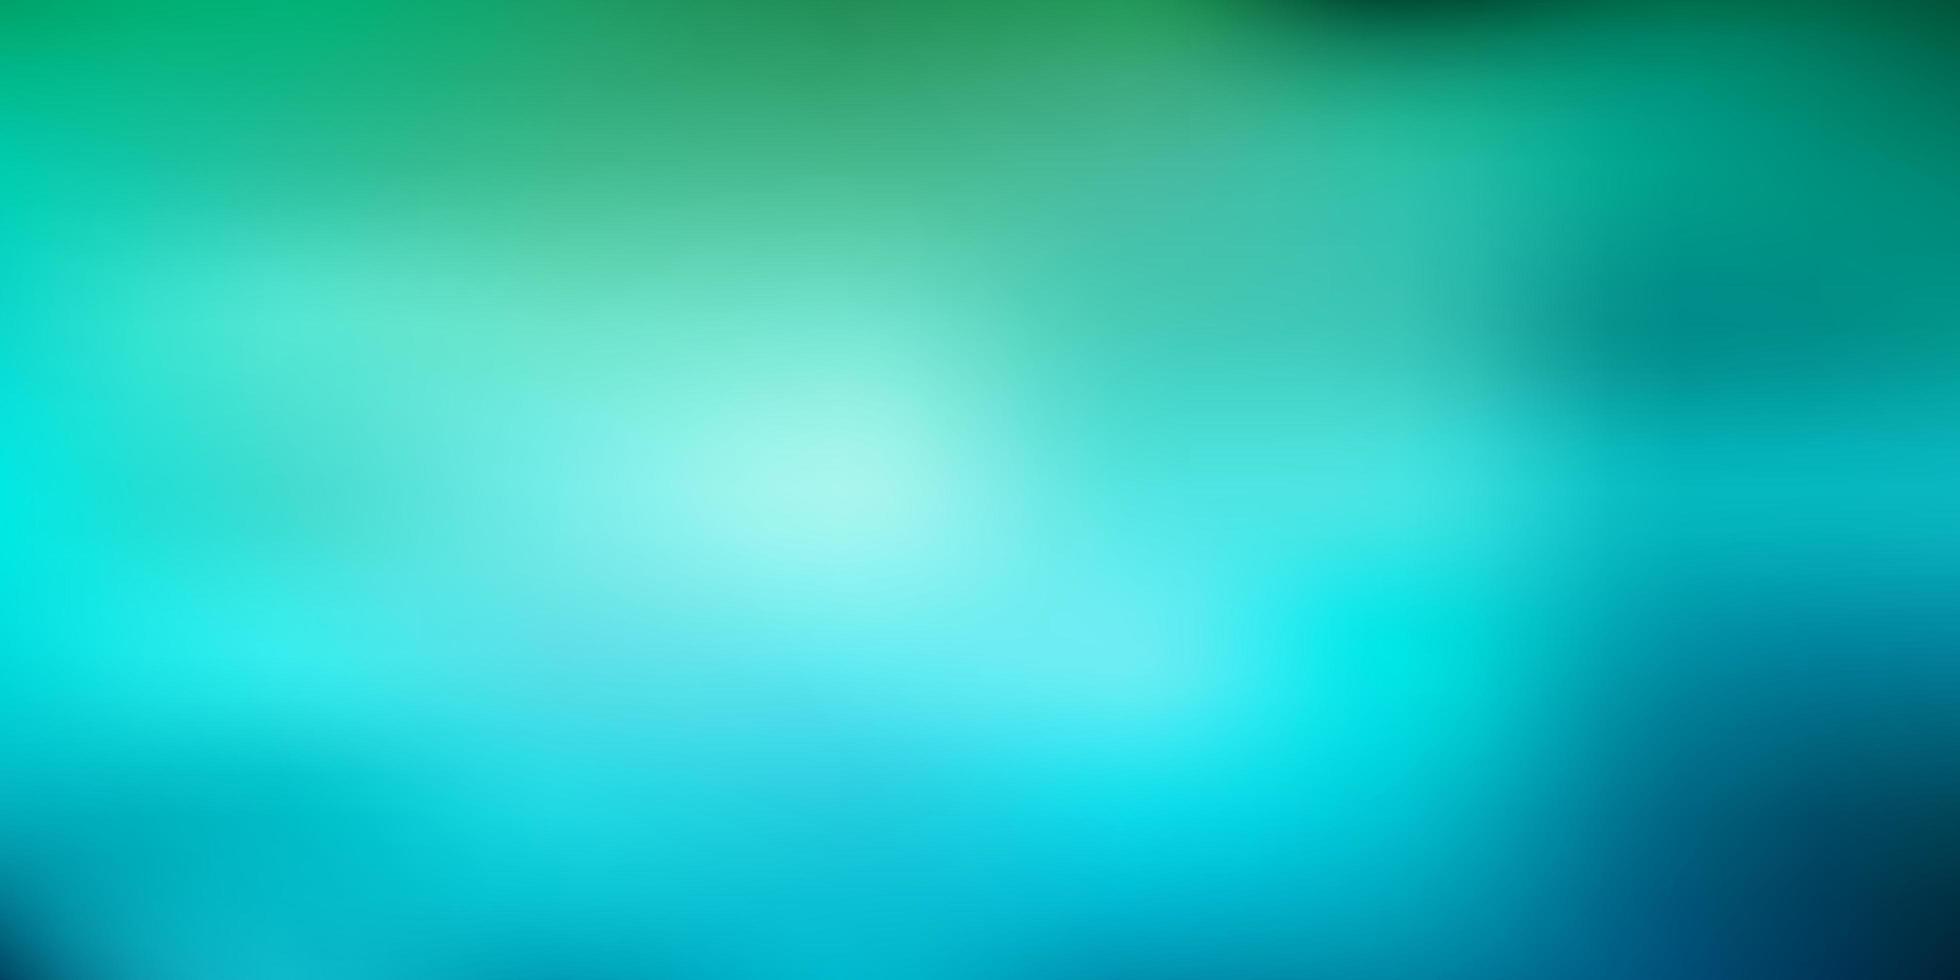 Light blue green vector blurred texture